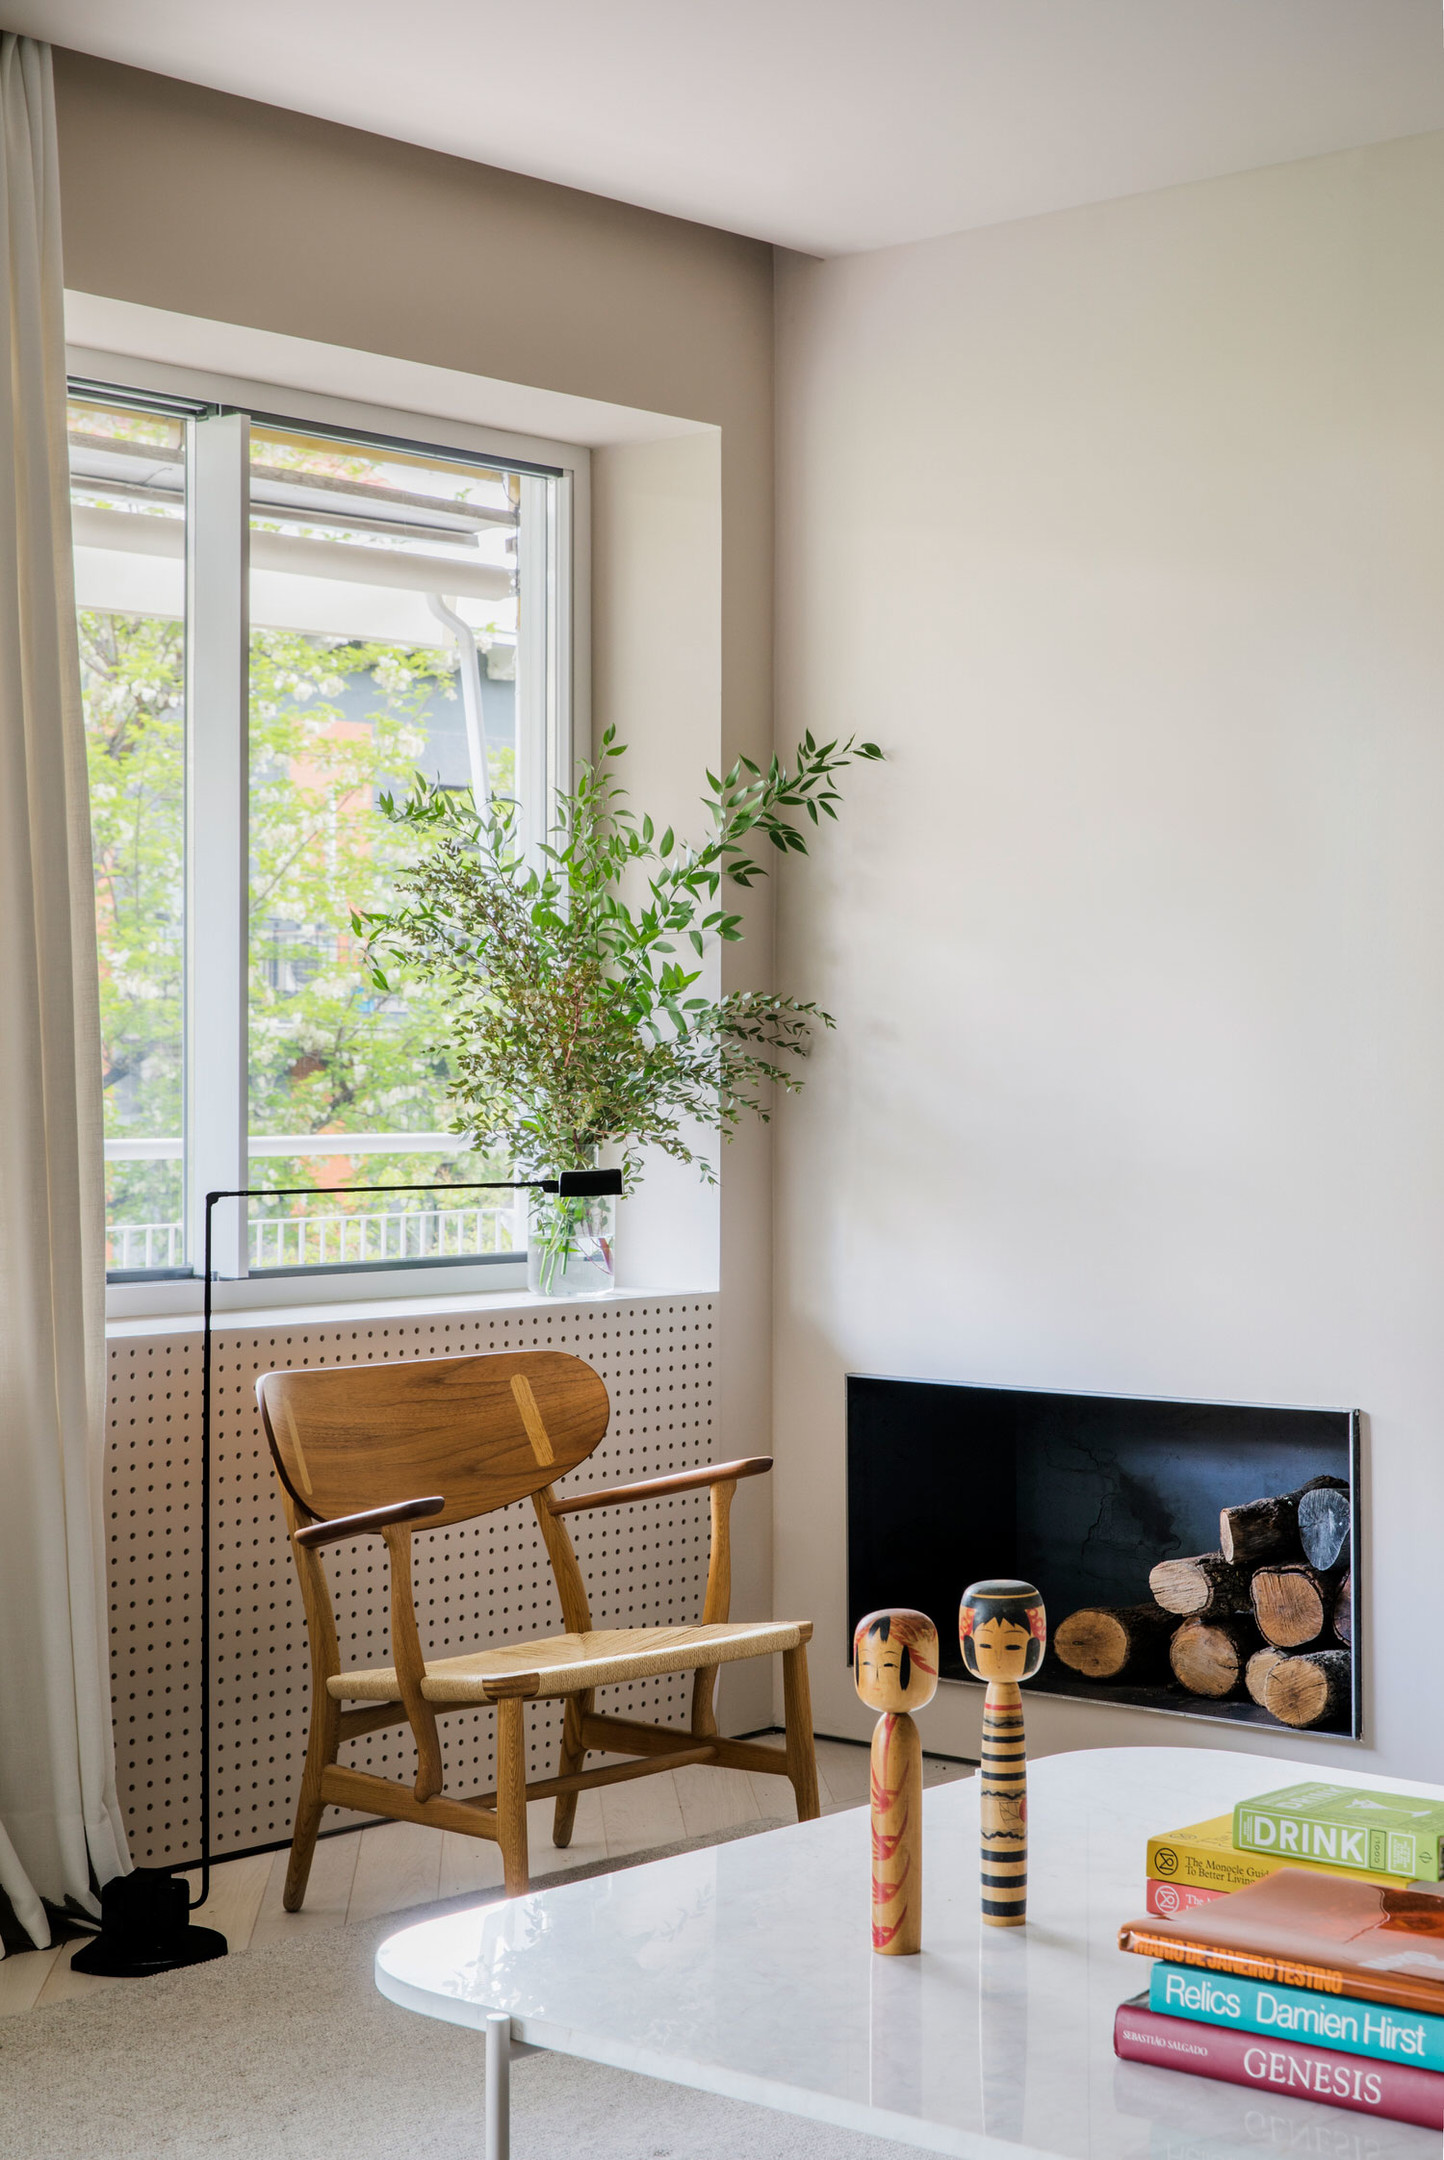 Bên cạnh ô cửa sổ, một chiếc ghế bành bằng gỗ nhỏ nhắn với chiếc đèn sàn có thể điều chỉnh độ cao khi chủ nhân cần đọc sách. Trên bệ cửa sổ là lọ hoa thủy tinh với những nhánh cây xanh tươi mắt. 